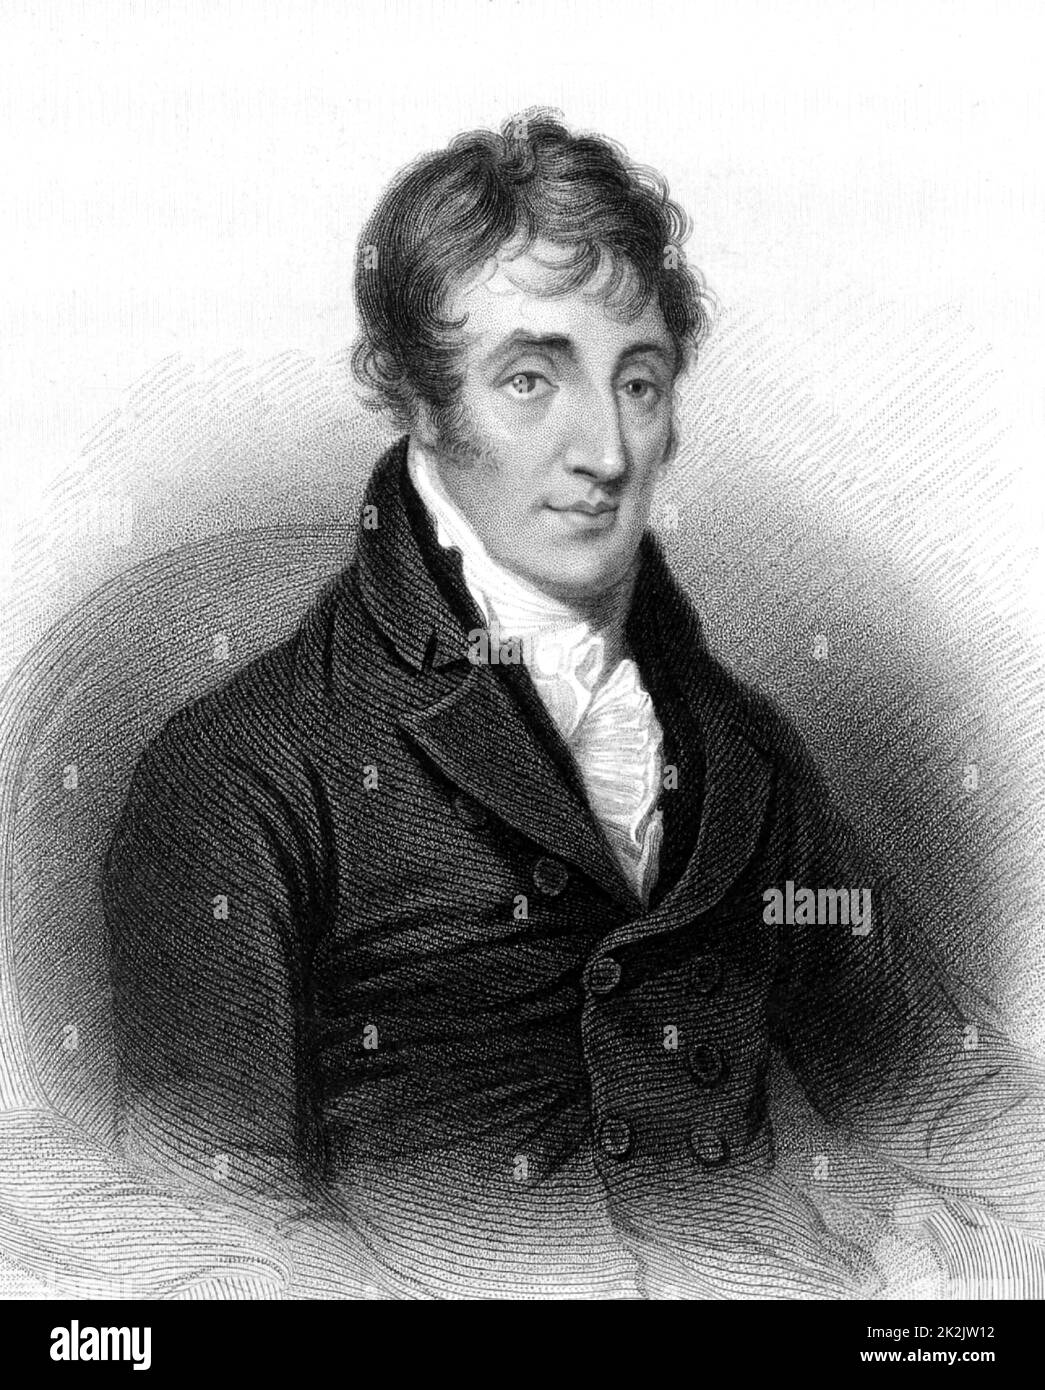 James Grahame (1765-1811) schottischer Dichter und Geistlicher. Stich aus dem 'A Biographical Dictionary of Eminent Scotsmen' von Thomas Thomson (1870). Stockfoto